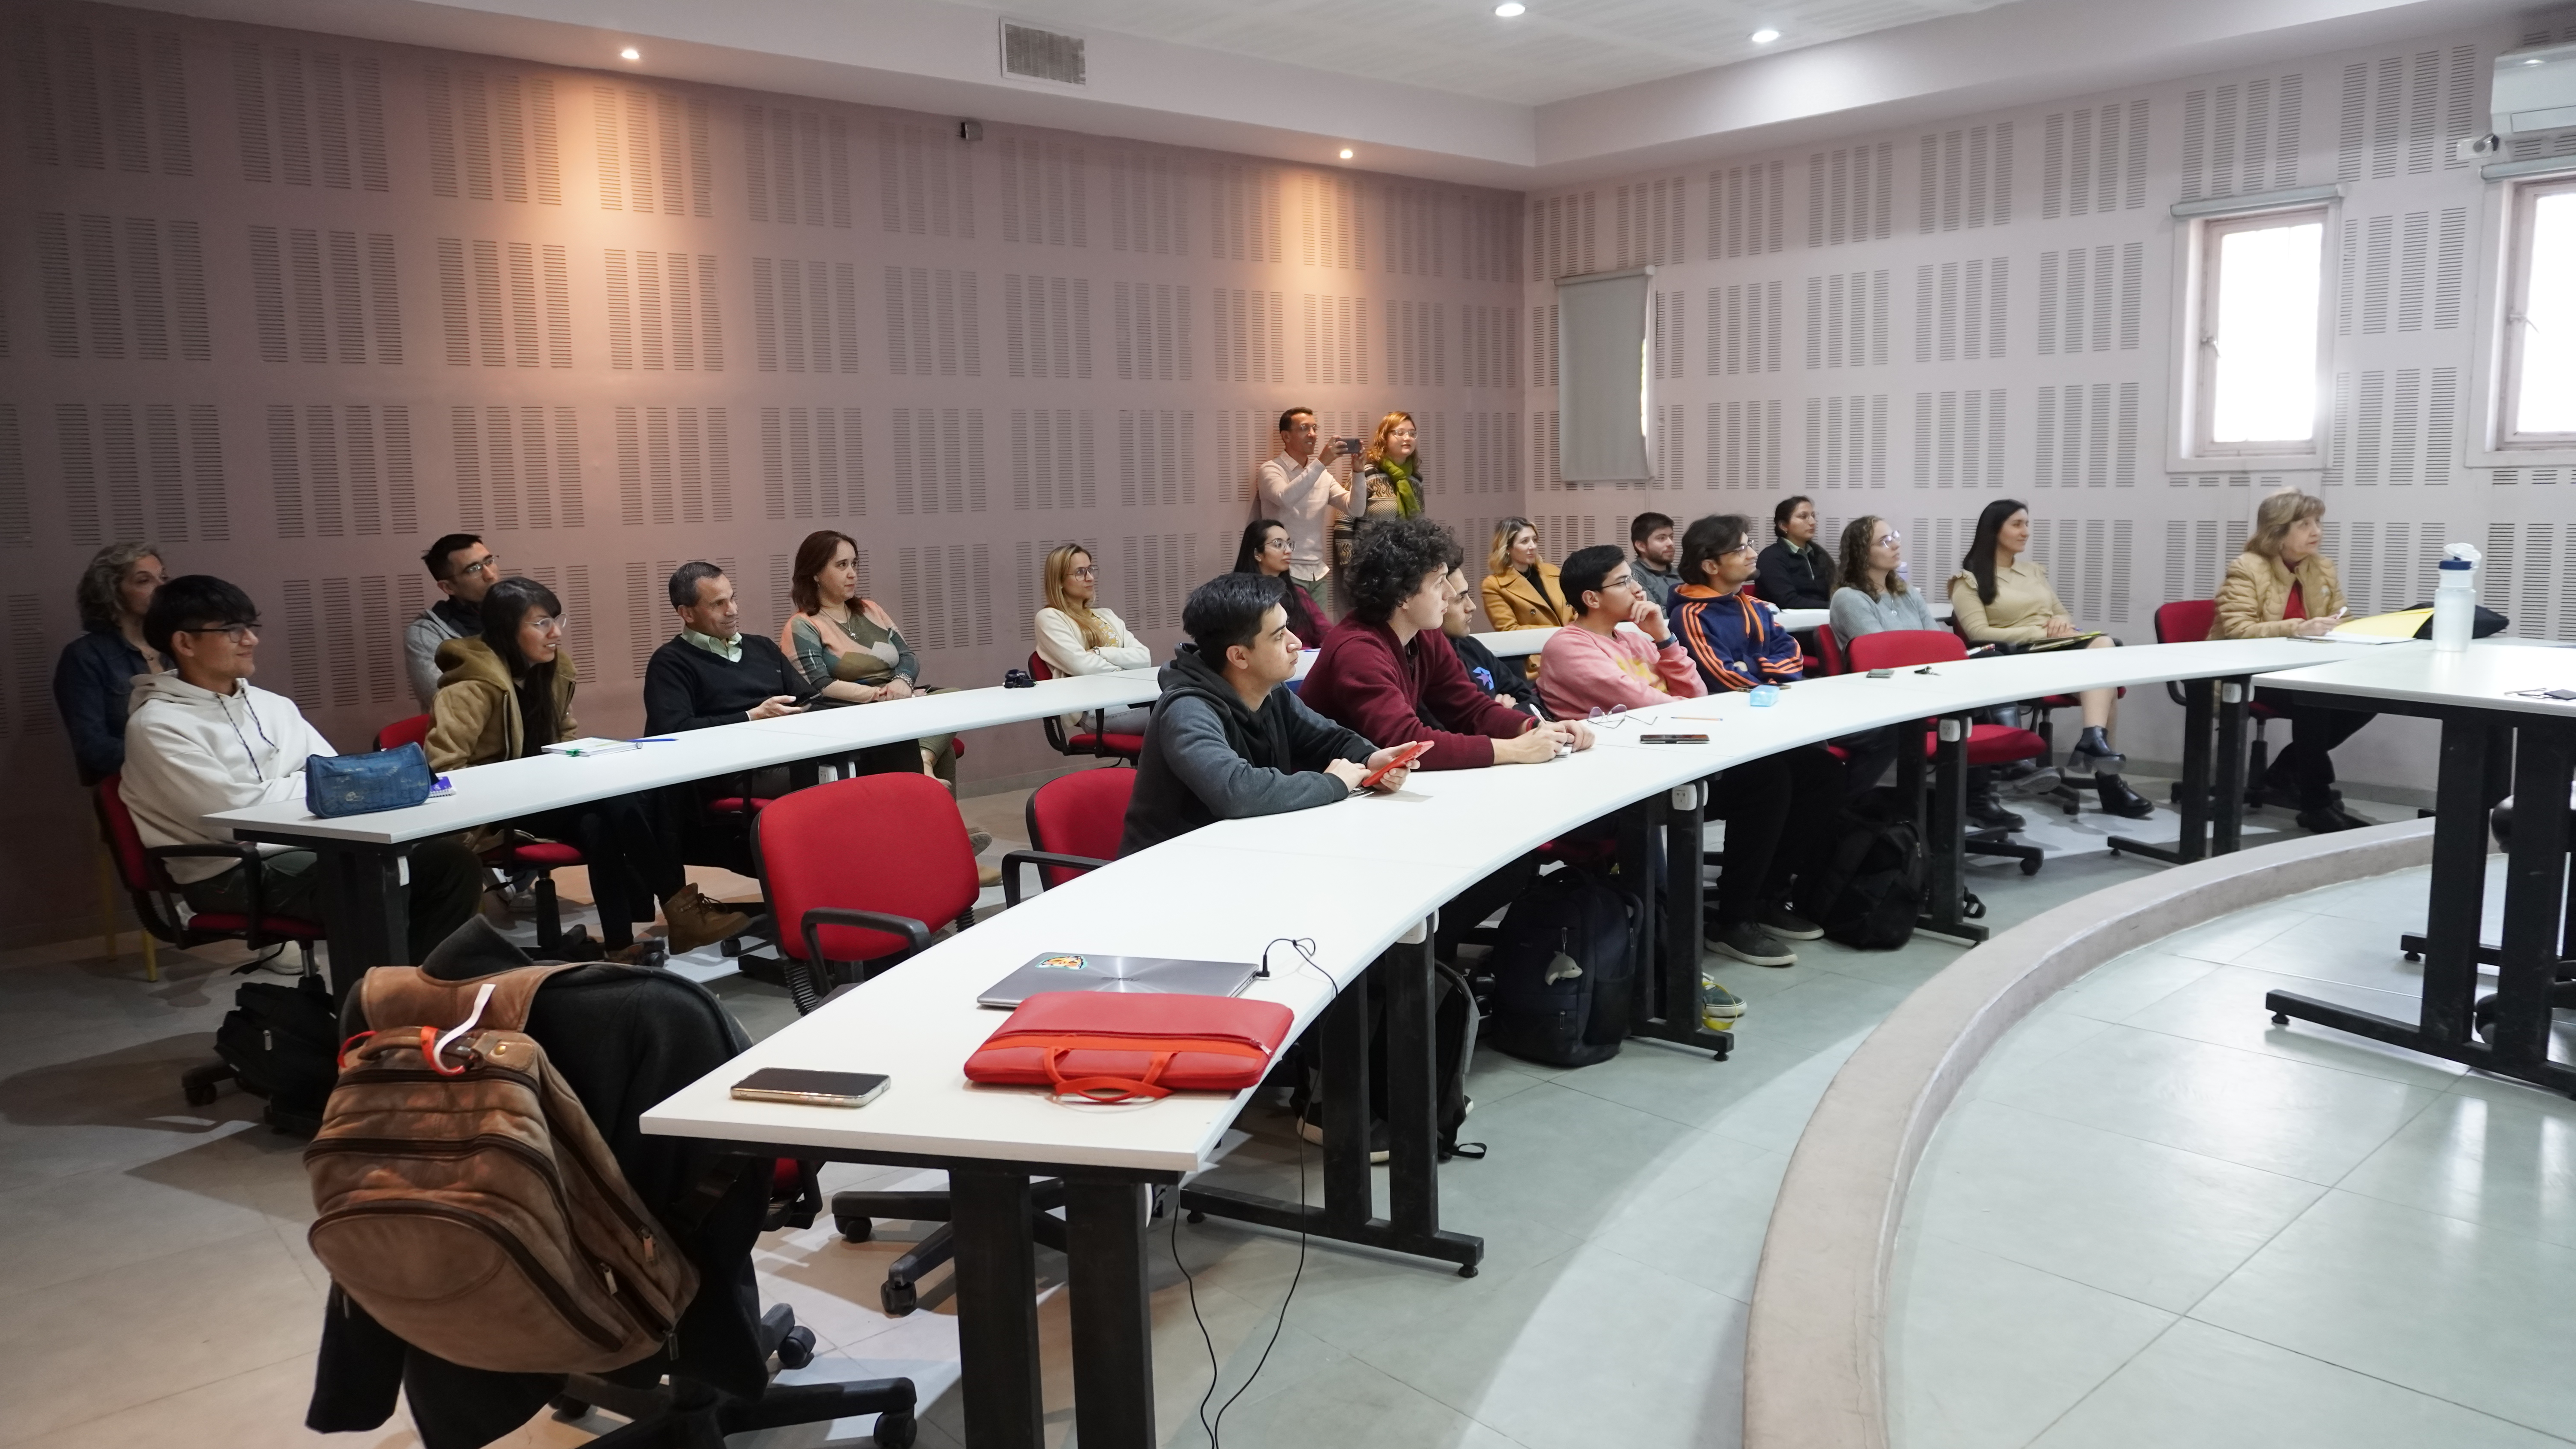 Docentes de la Universidade Federal de Itajubá de Brasil visitaron la FI para brindar charlas y estructurar acuerdos 